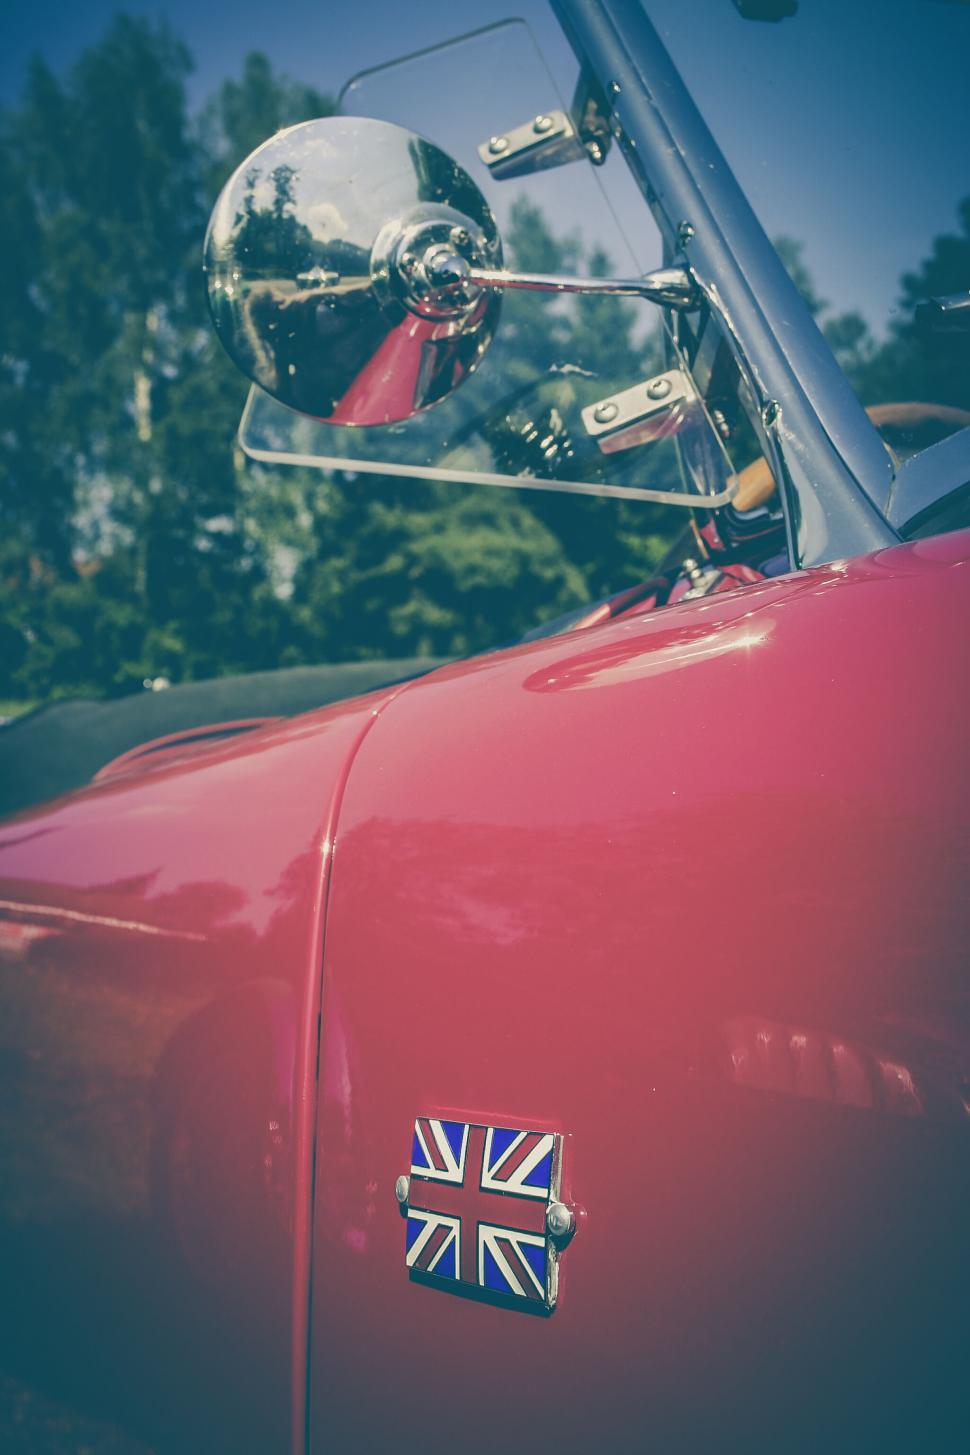 Free Image of Vintage car with UK flag emblem close-up 